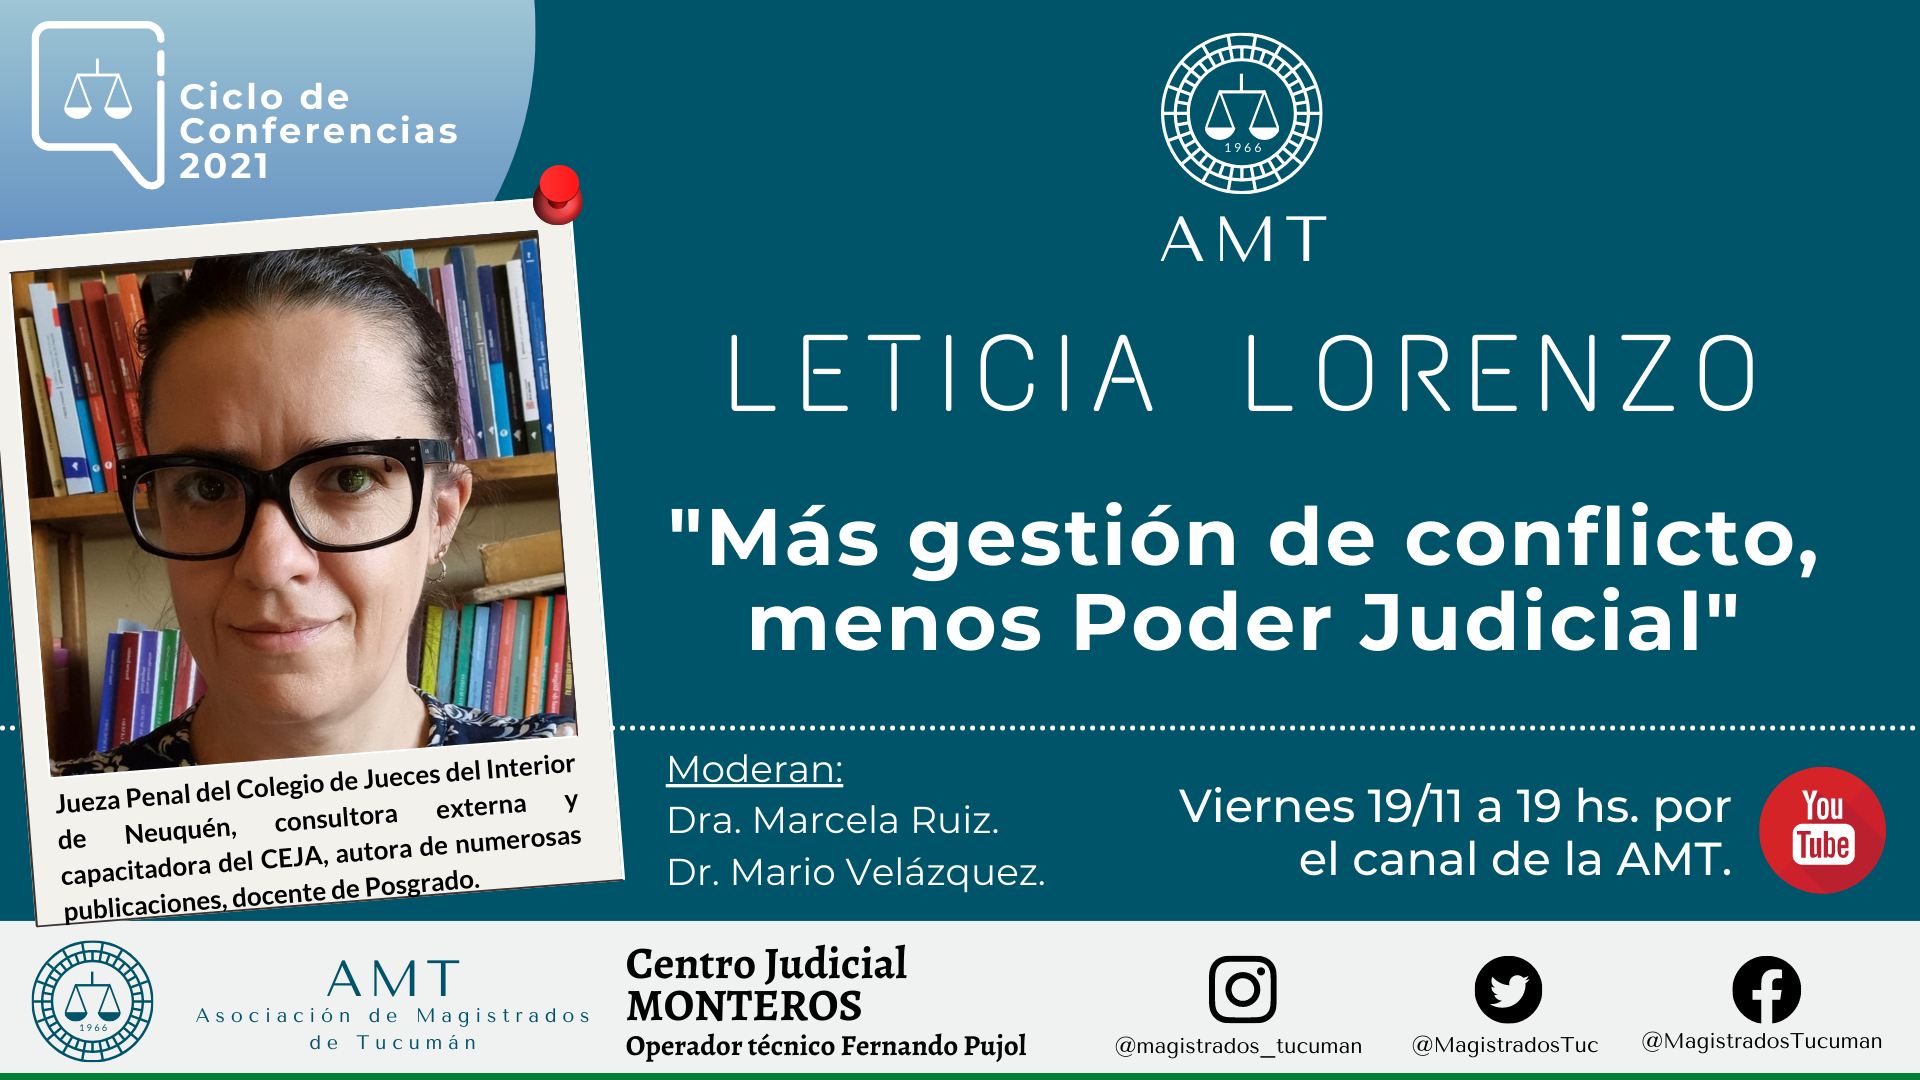 Vuelva a ver la conferencia de Leticia Lorenzo «Más gestión de conflicto, menos Poder Judicial»